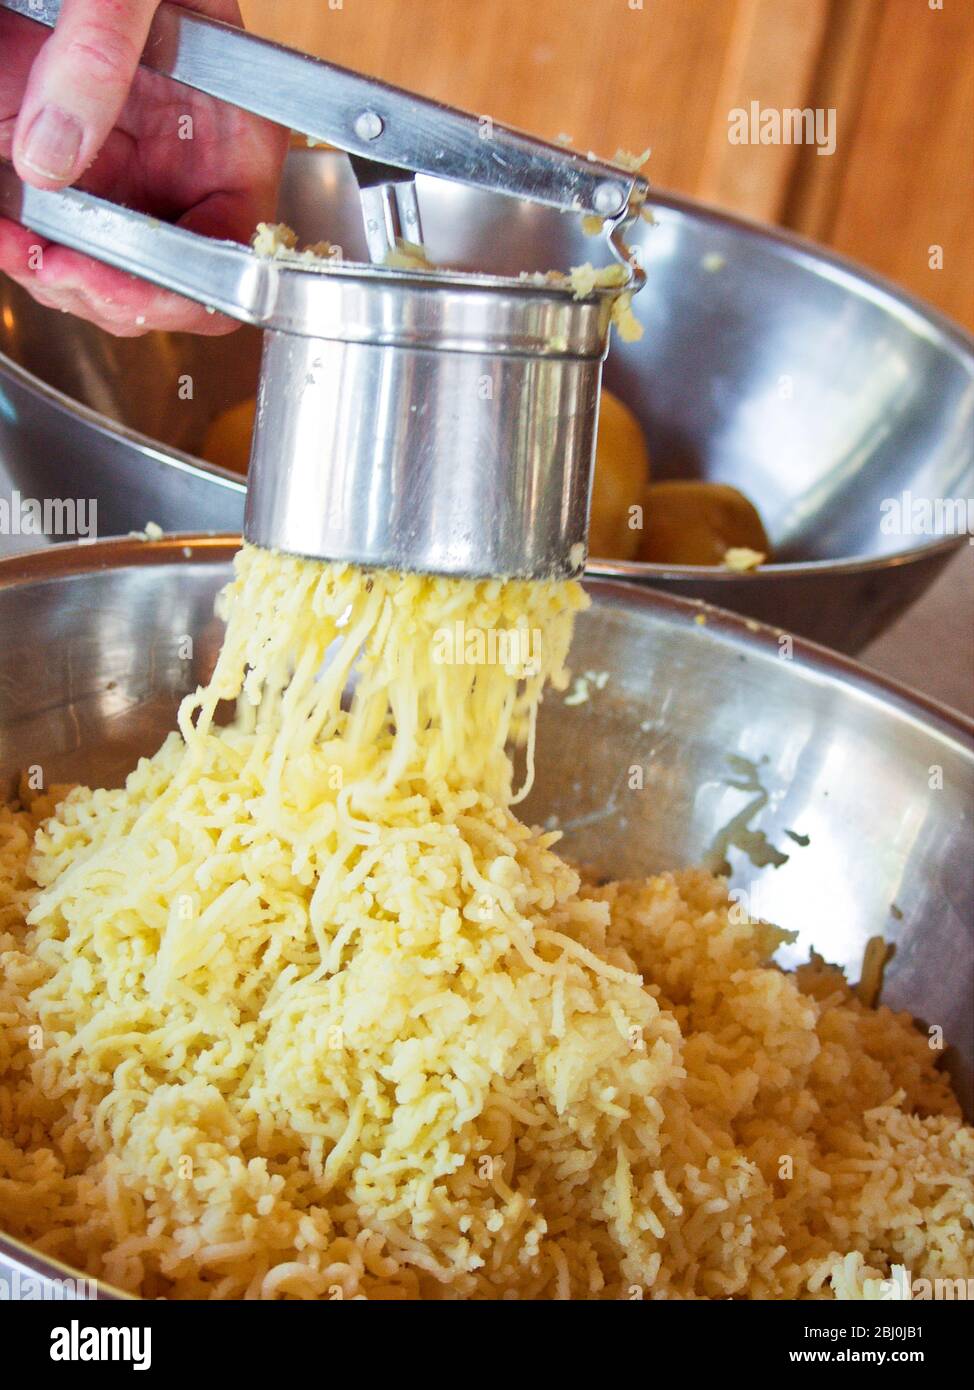 Boiled potatoes being pressed through a potato press to make gnocchi - Stock Photo